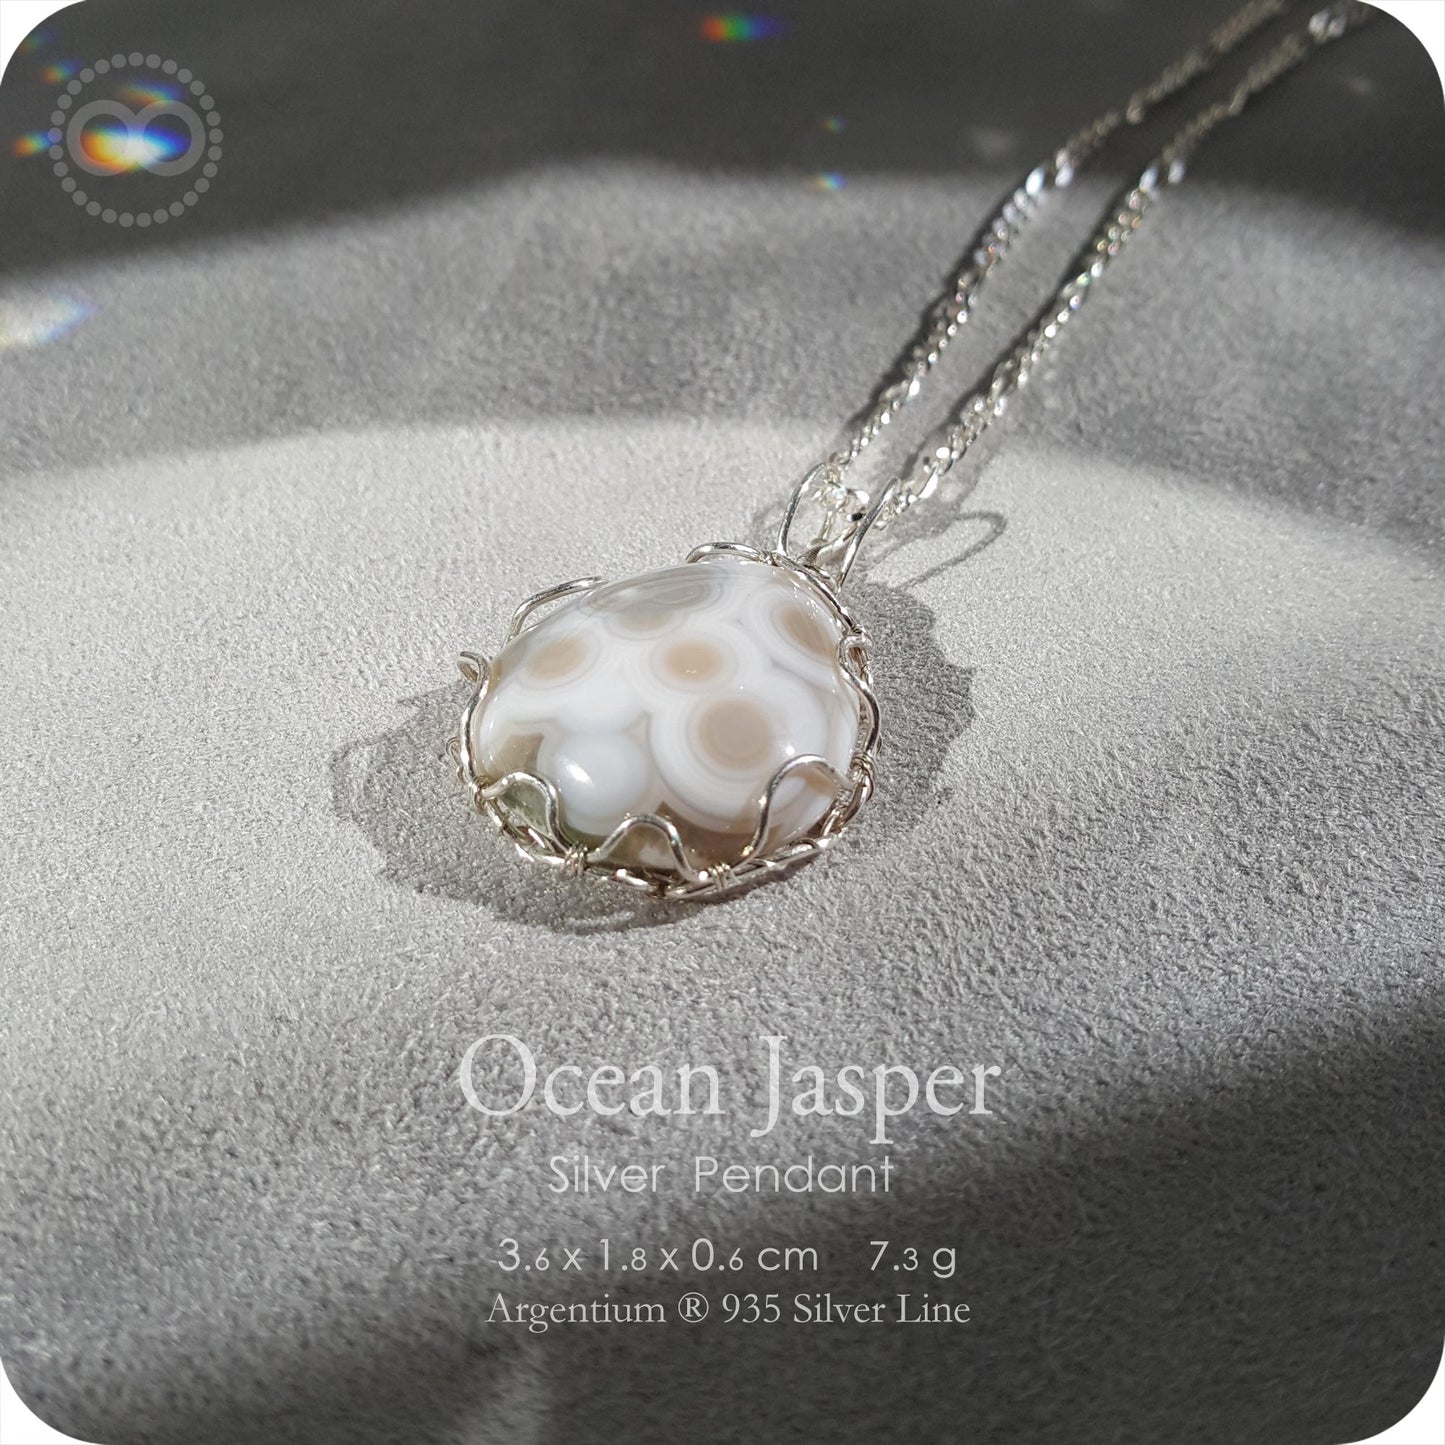 Ocean Jasper ✦ 海洋碧玉 Silver Necklace - H222